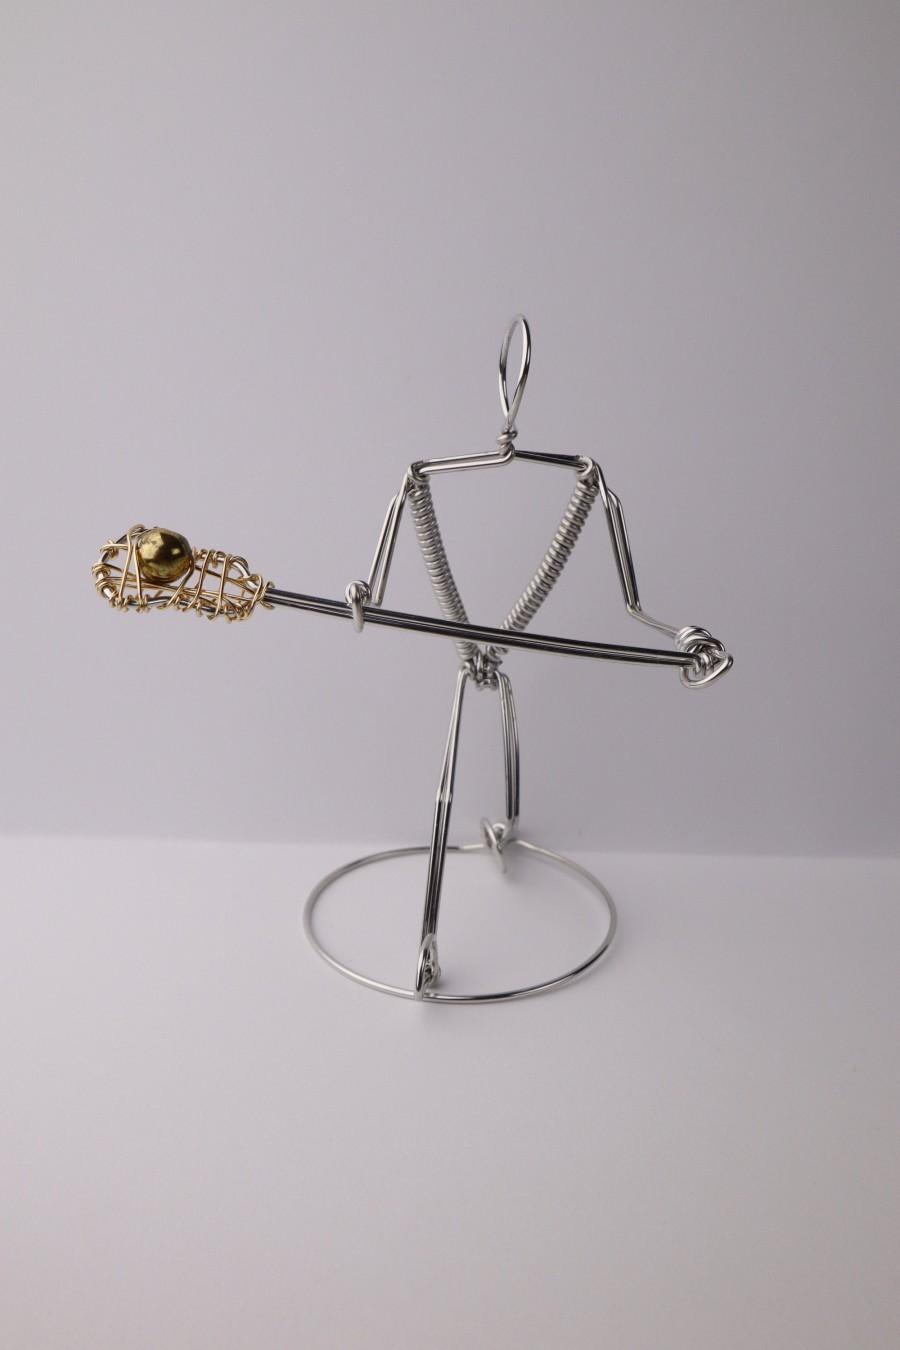 زفاف - LACROSSE PLAYER ORNAMENT, Freestanding Miniature Wire Sculpture, Gift for Sports Fans